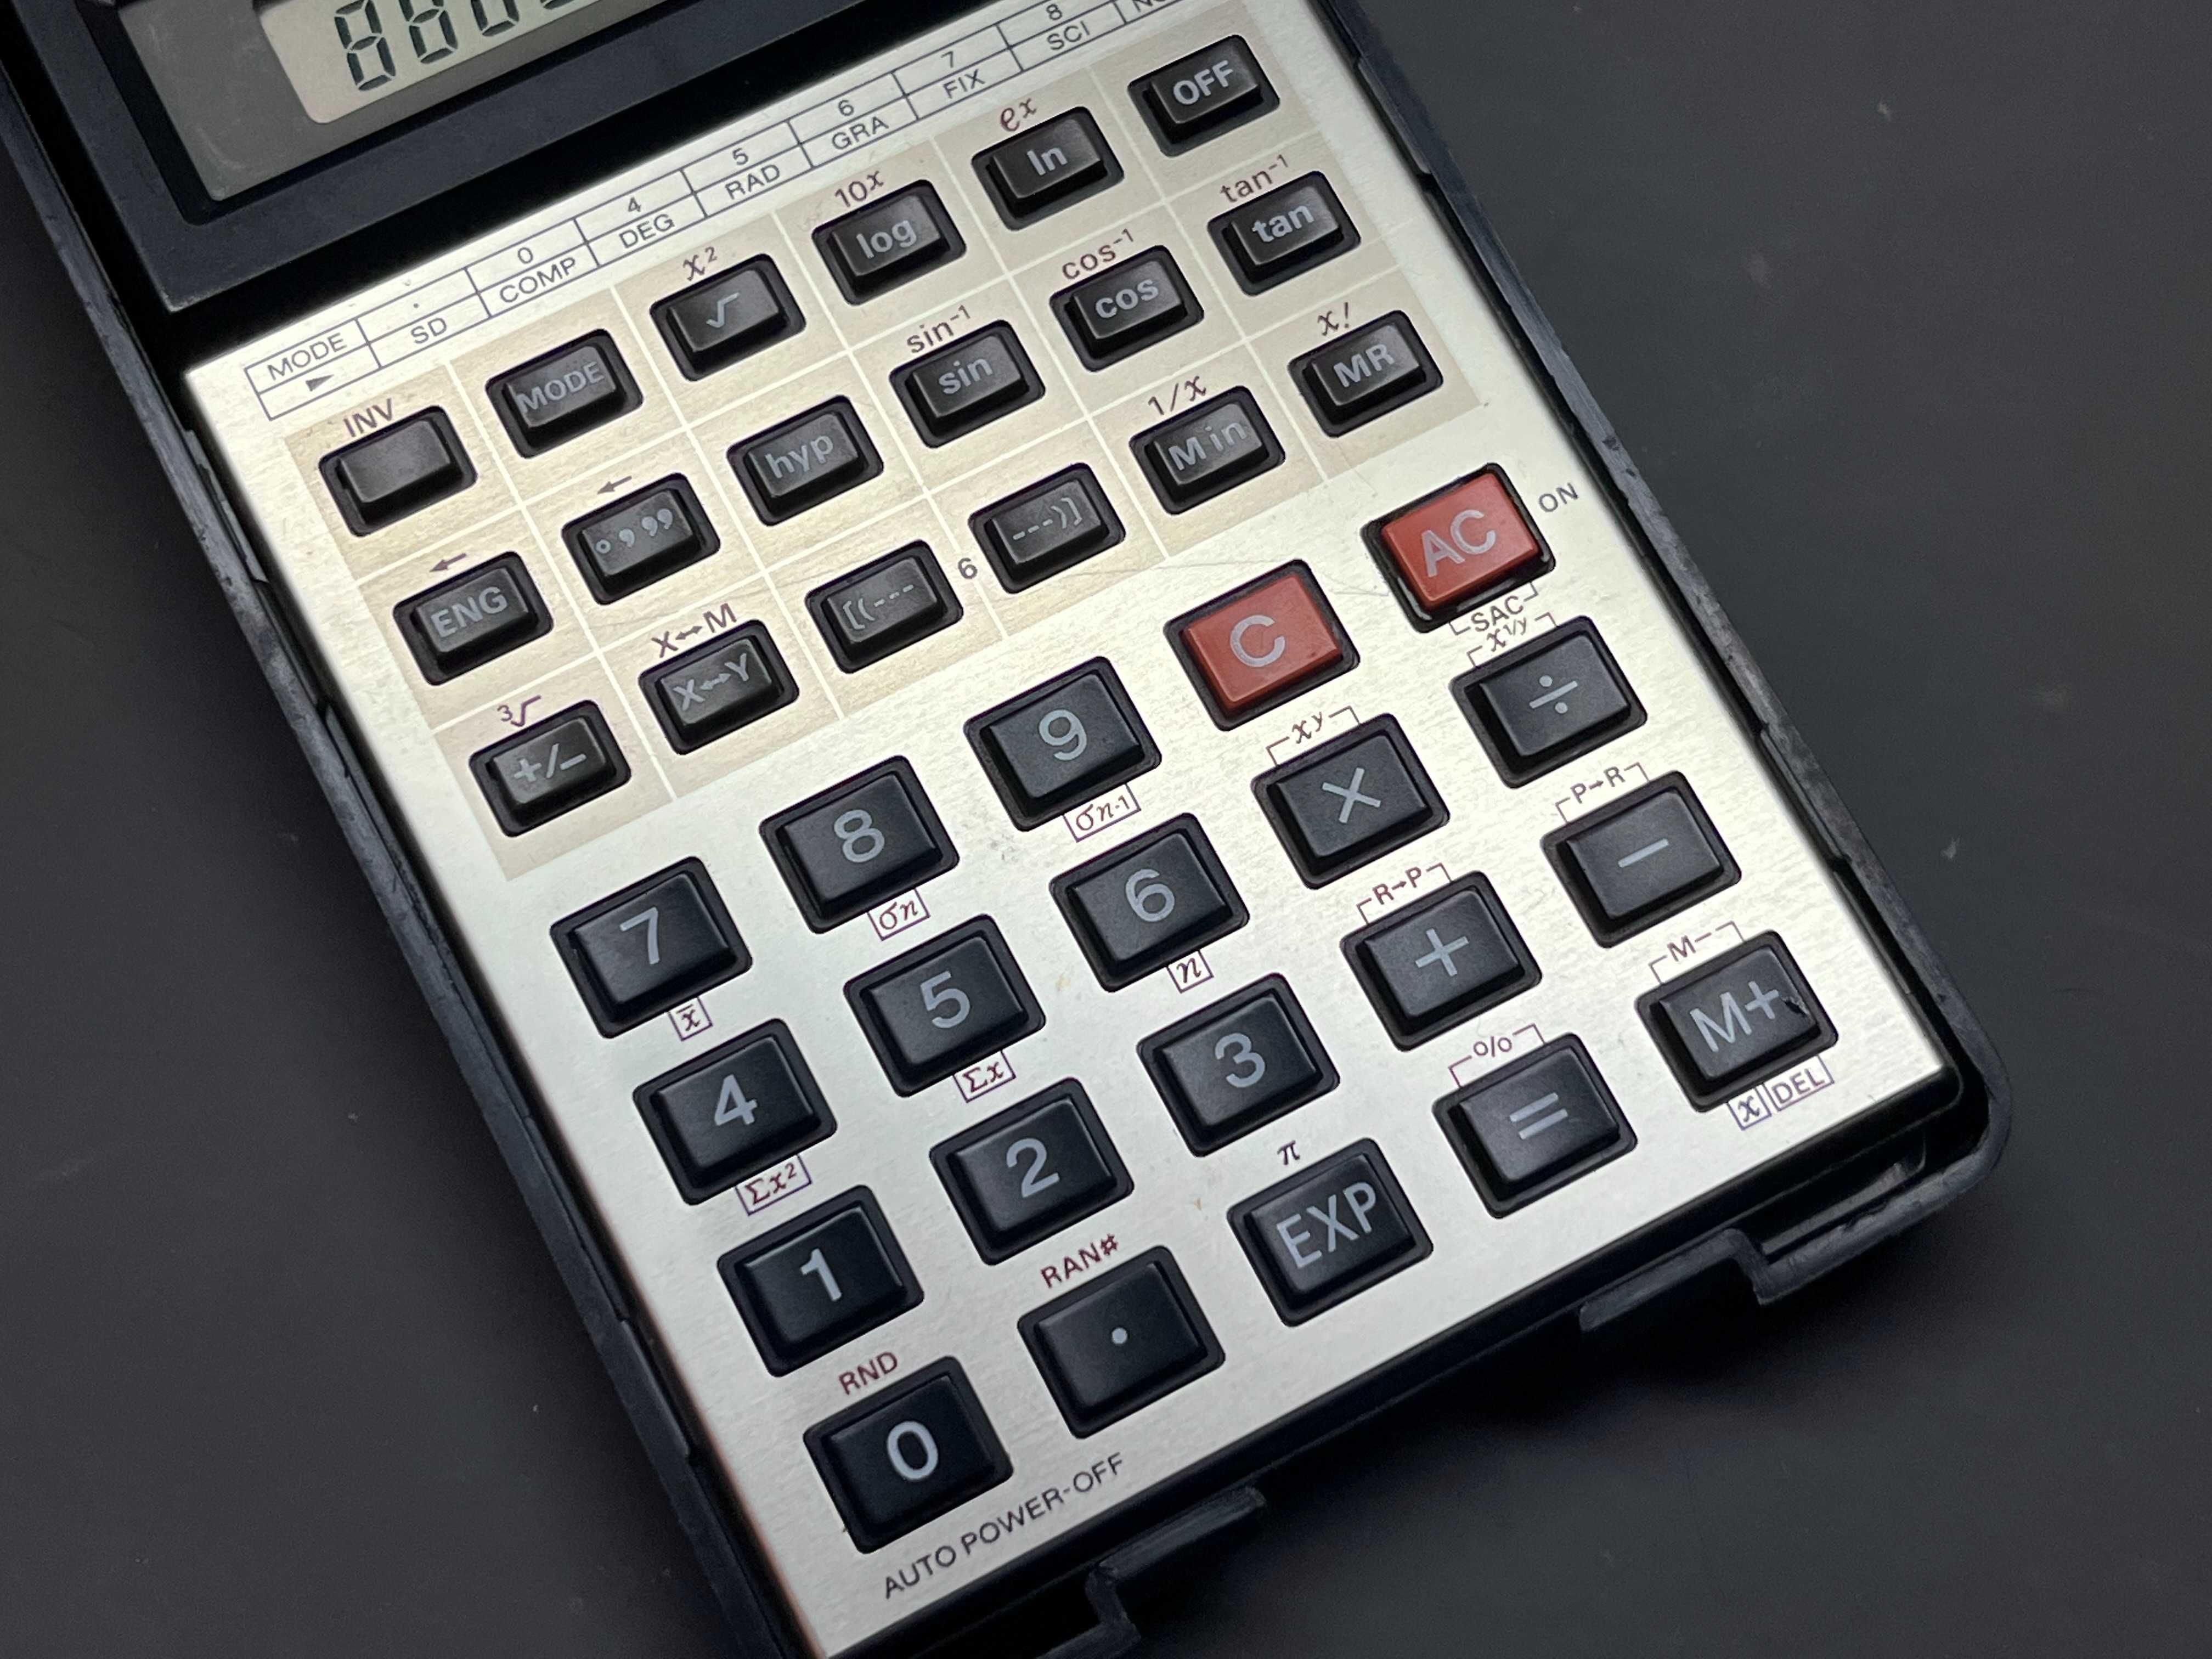 Stary kalkulator naukowy Casio FX-82c